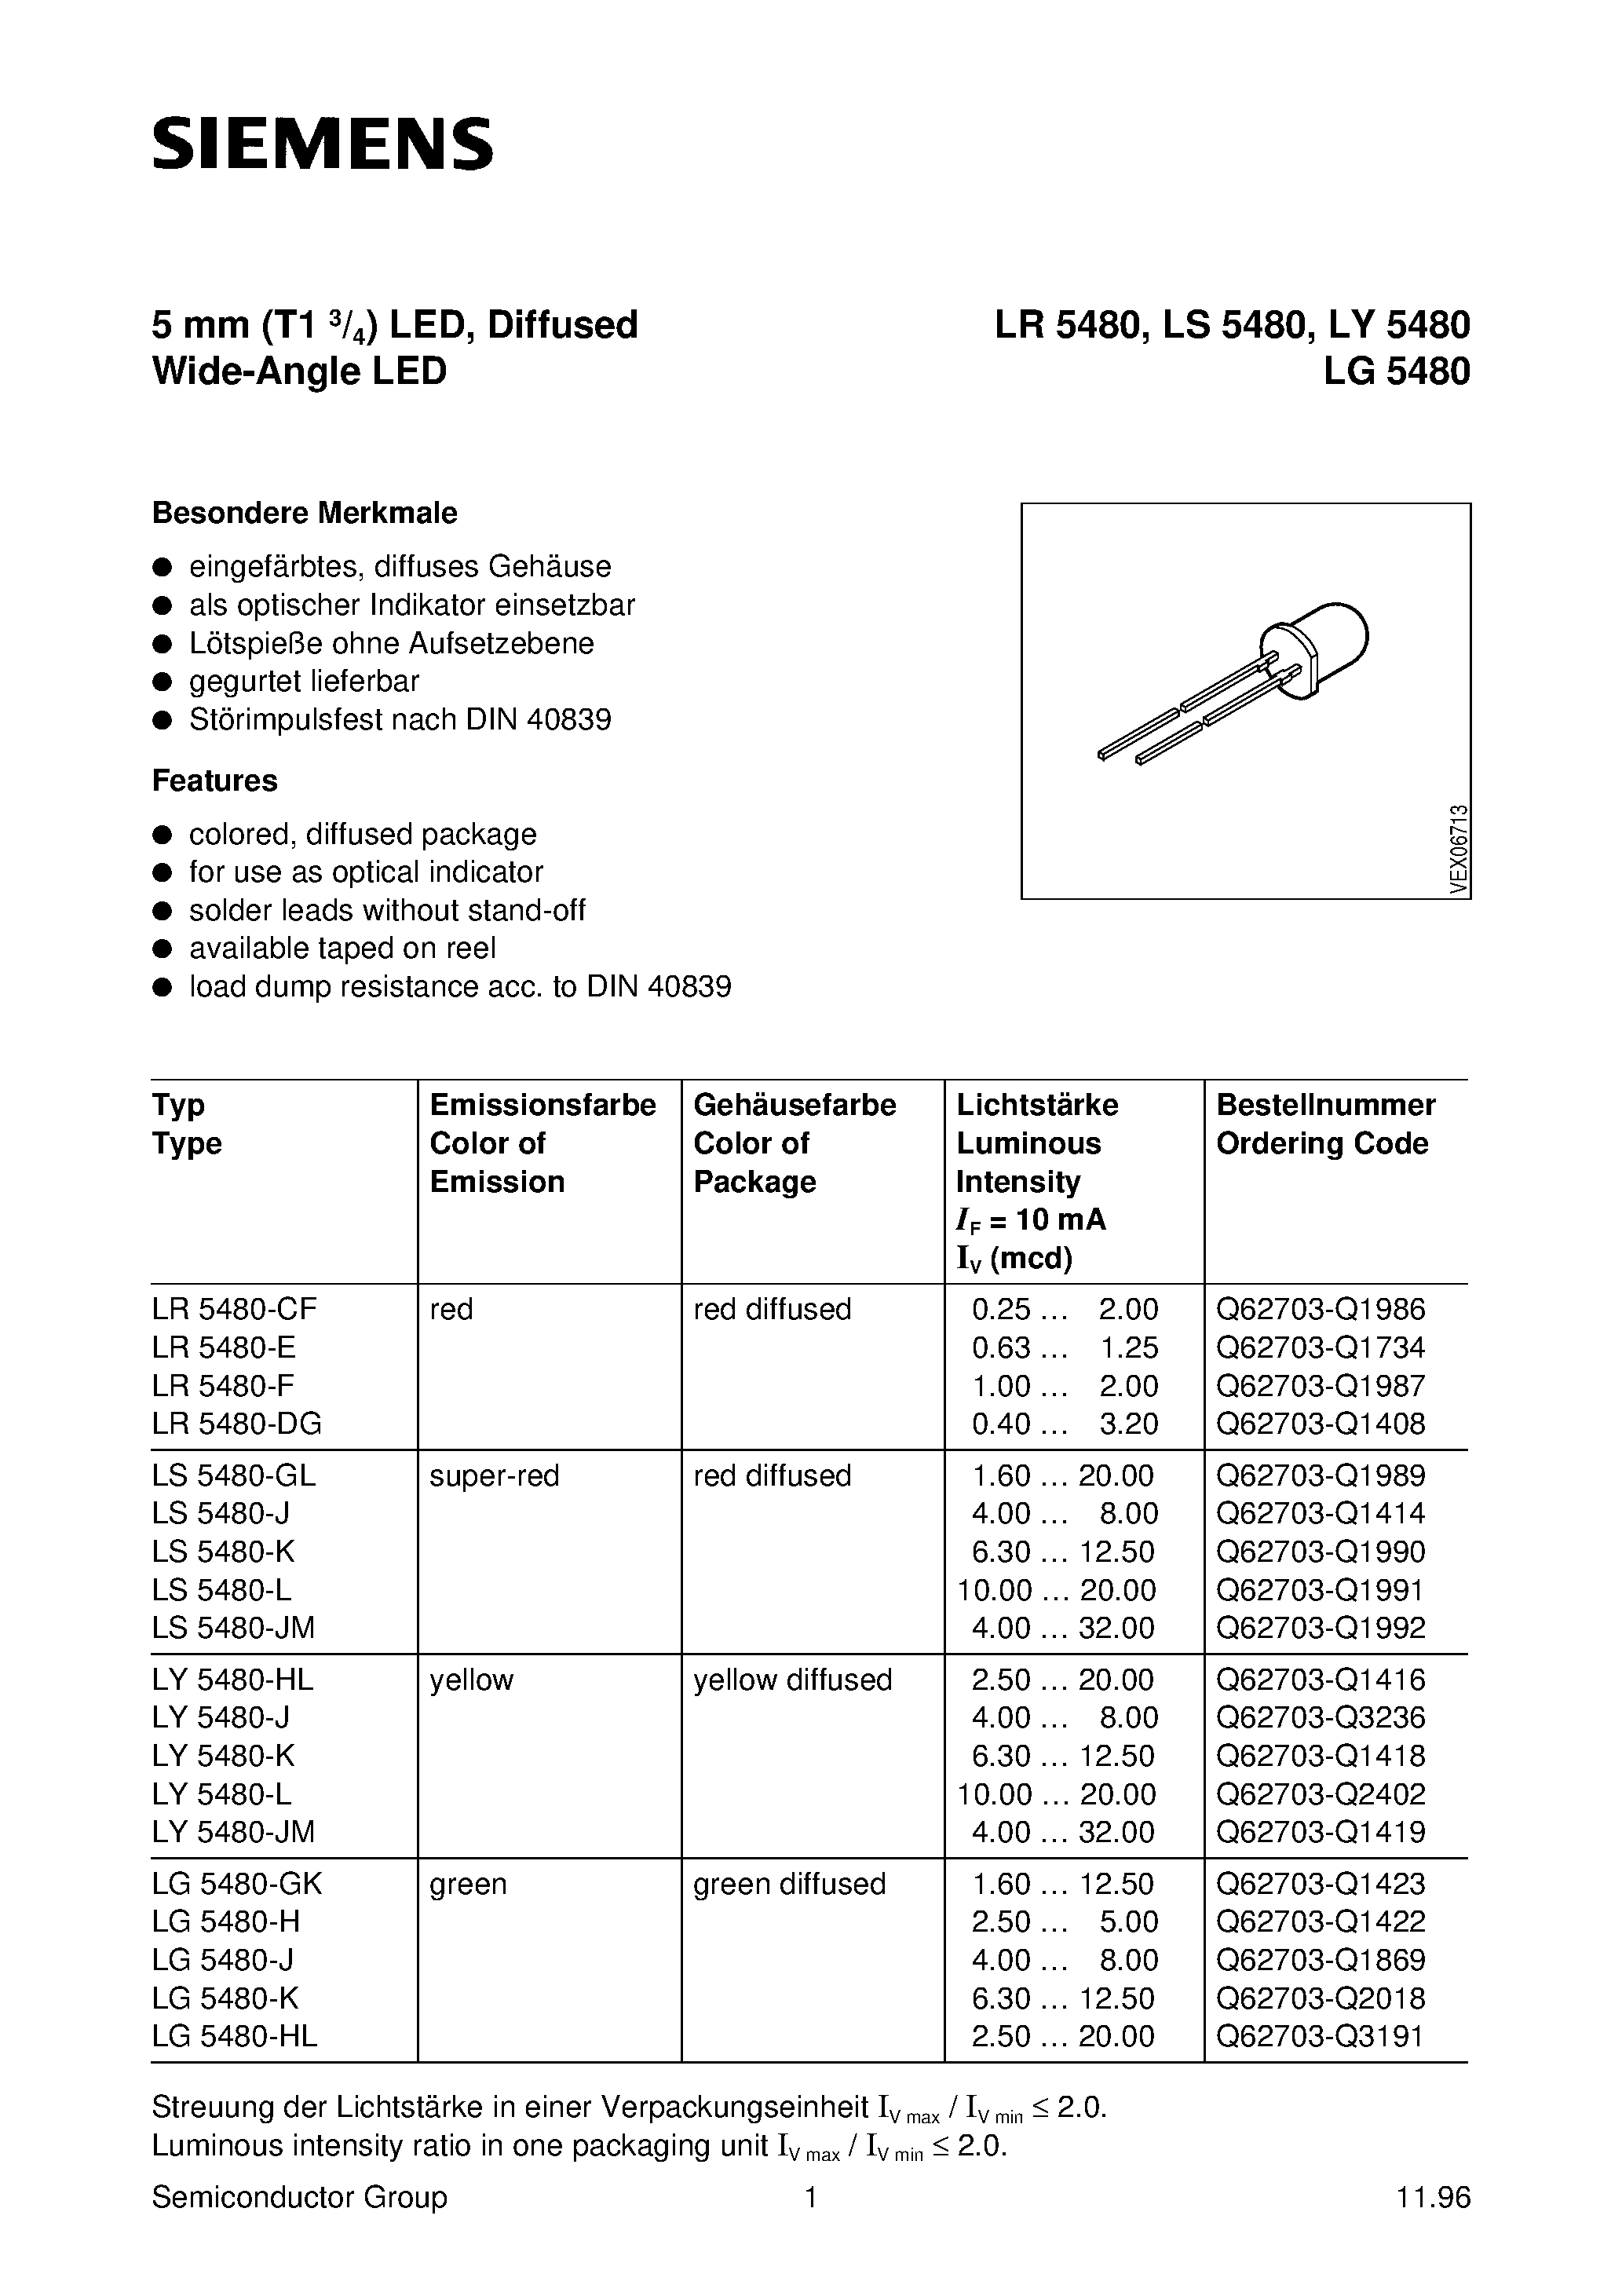 Даташит LS5480-J - T1 (5mm) LED LAMP страница 1